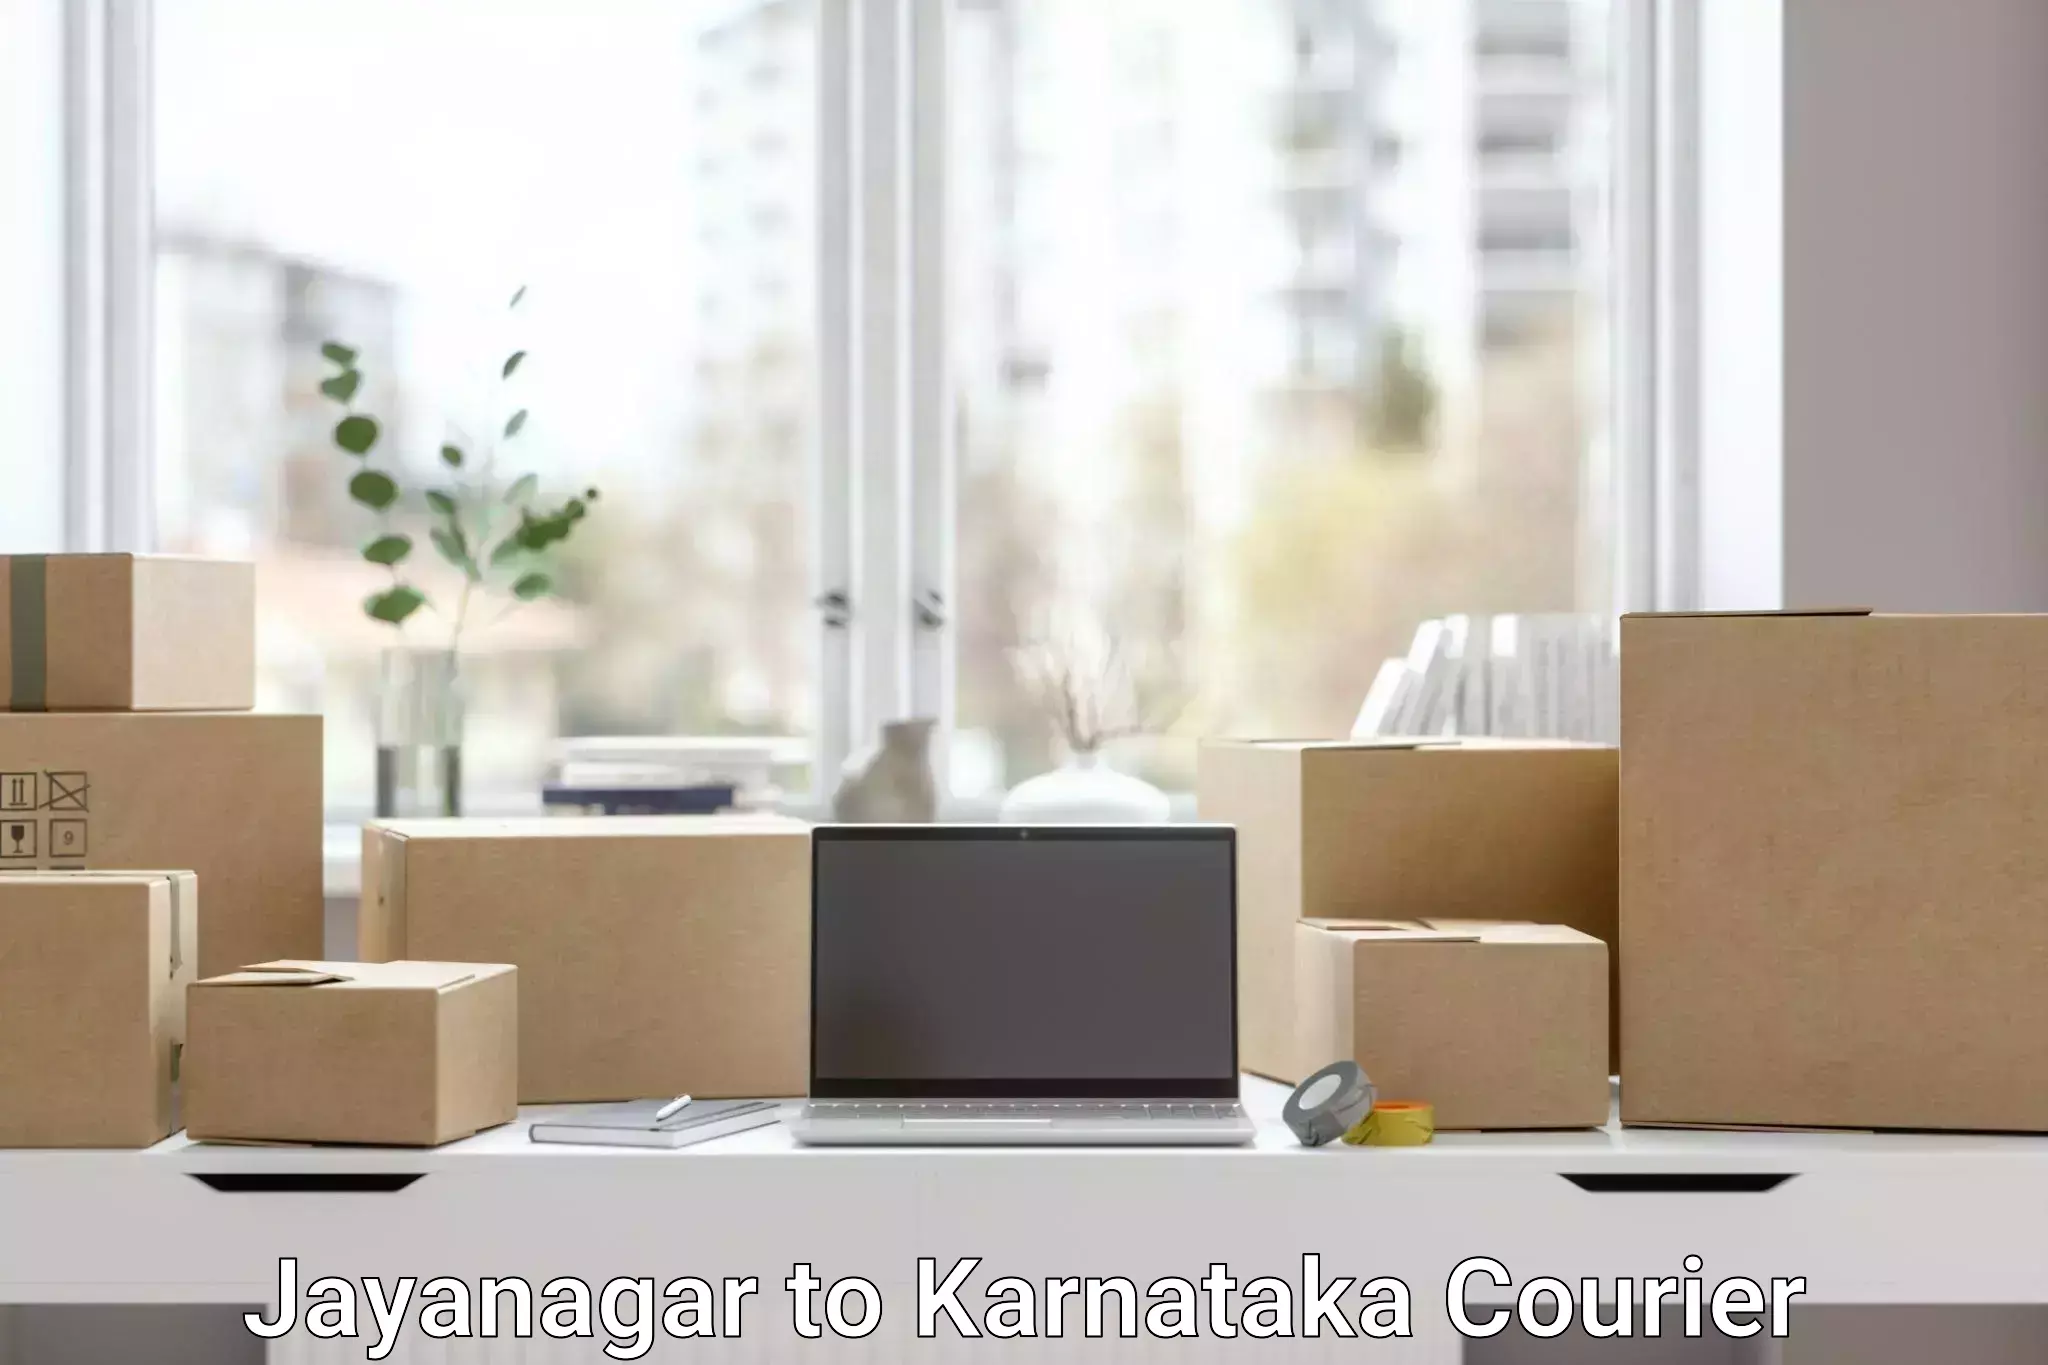 Logistics service provider Jayanagar to Gundlupete